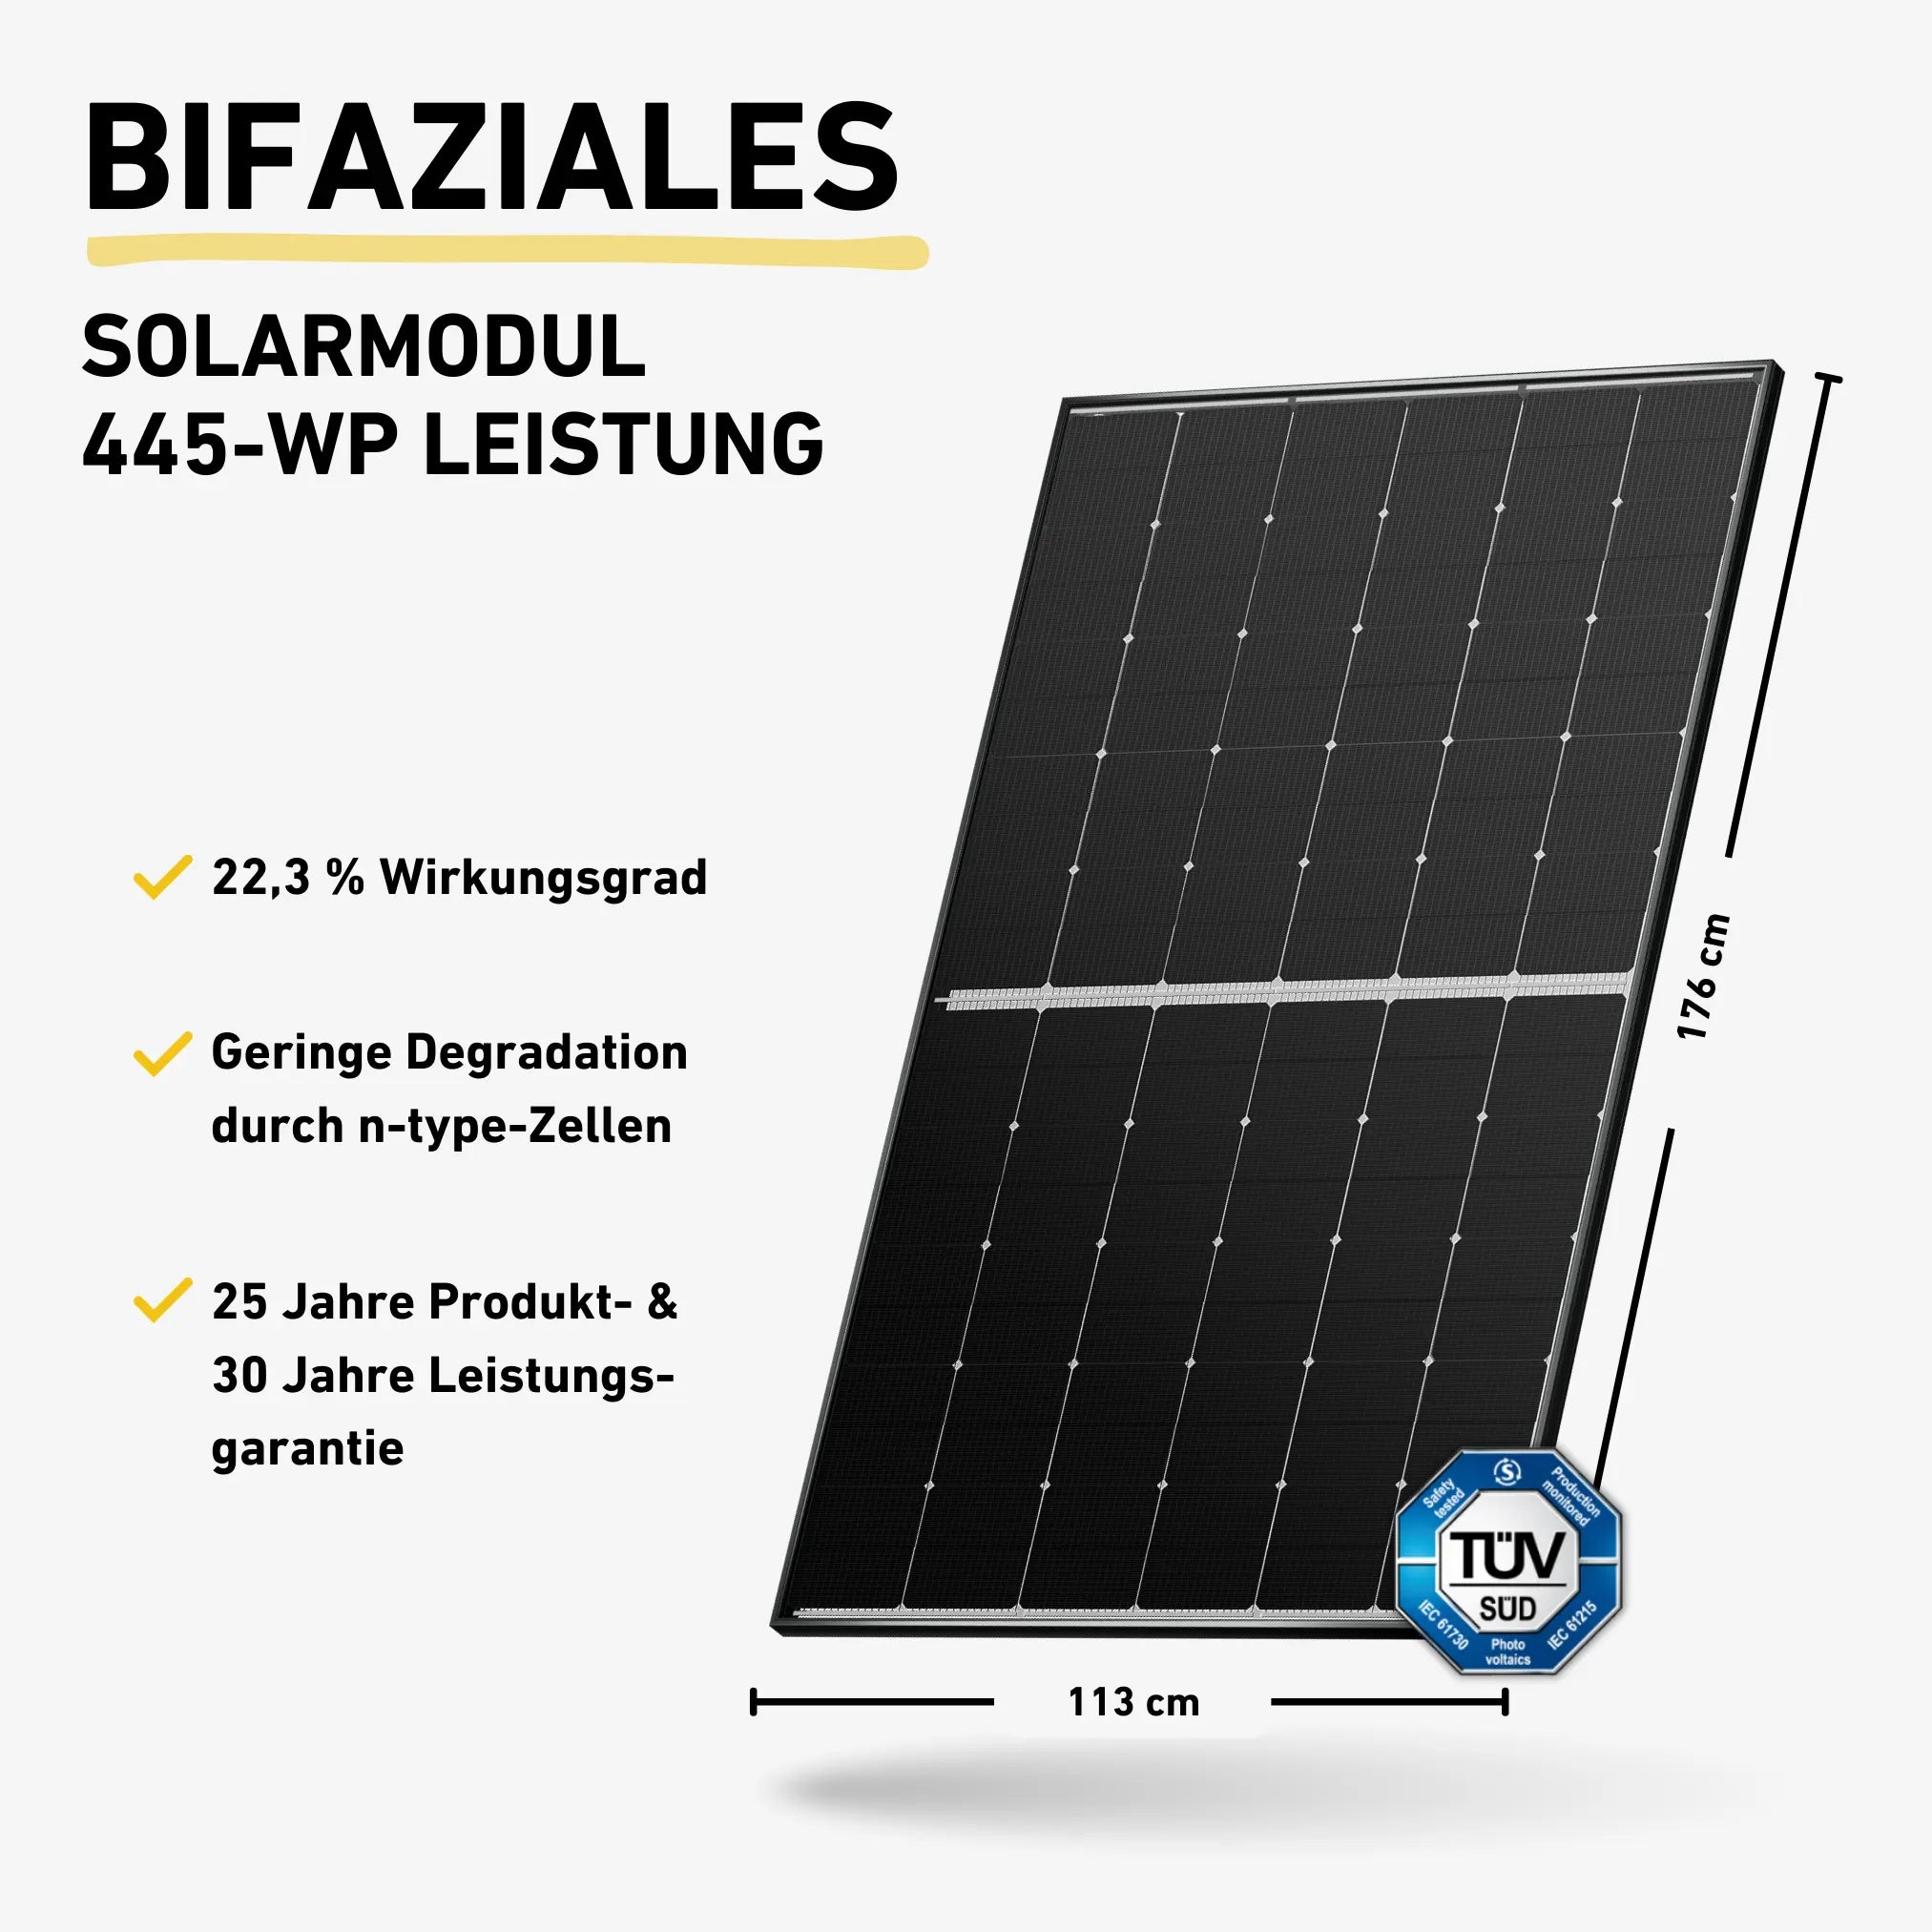 Balkonstrom Basic Bifaziales Solarmodul 445-WP Leistung Produktbild Darstellung 